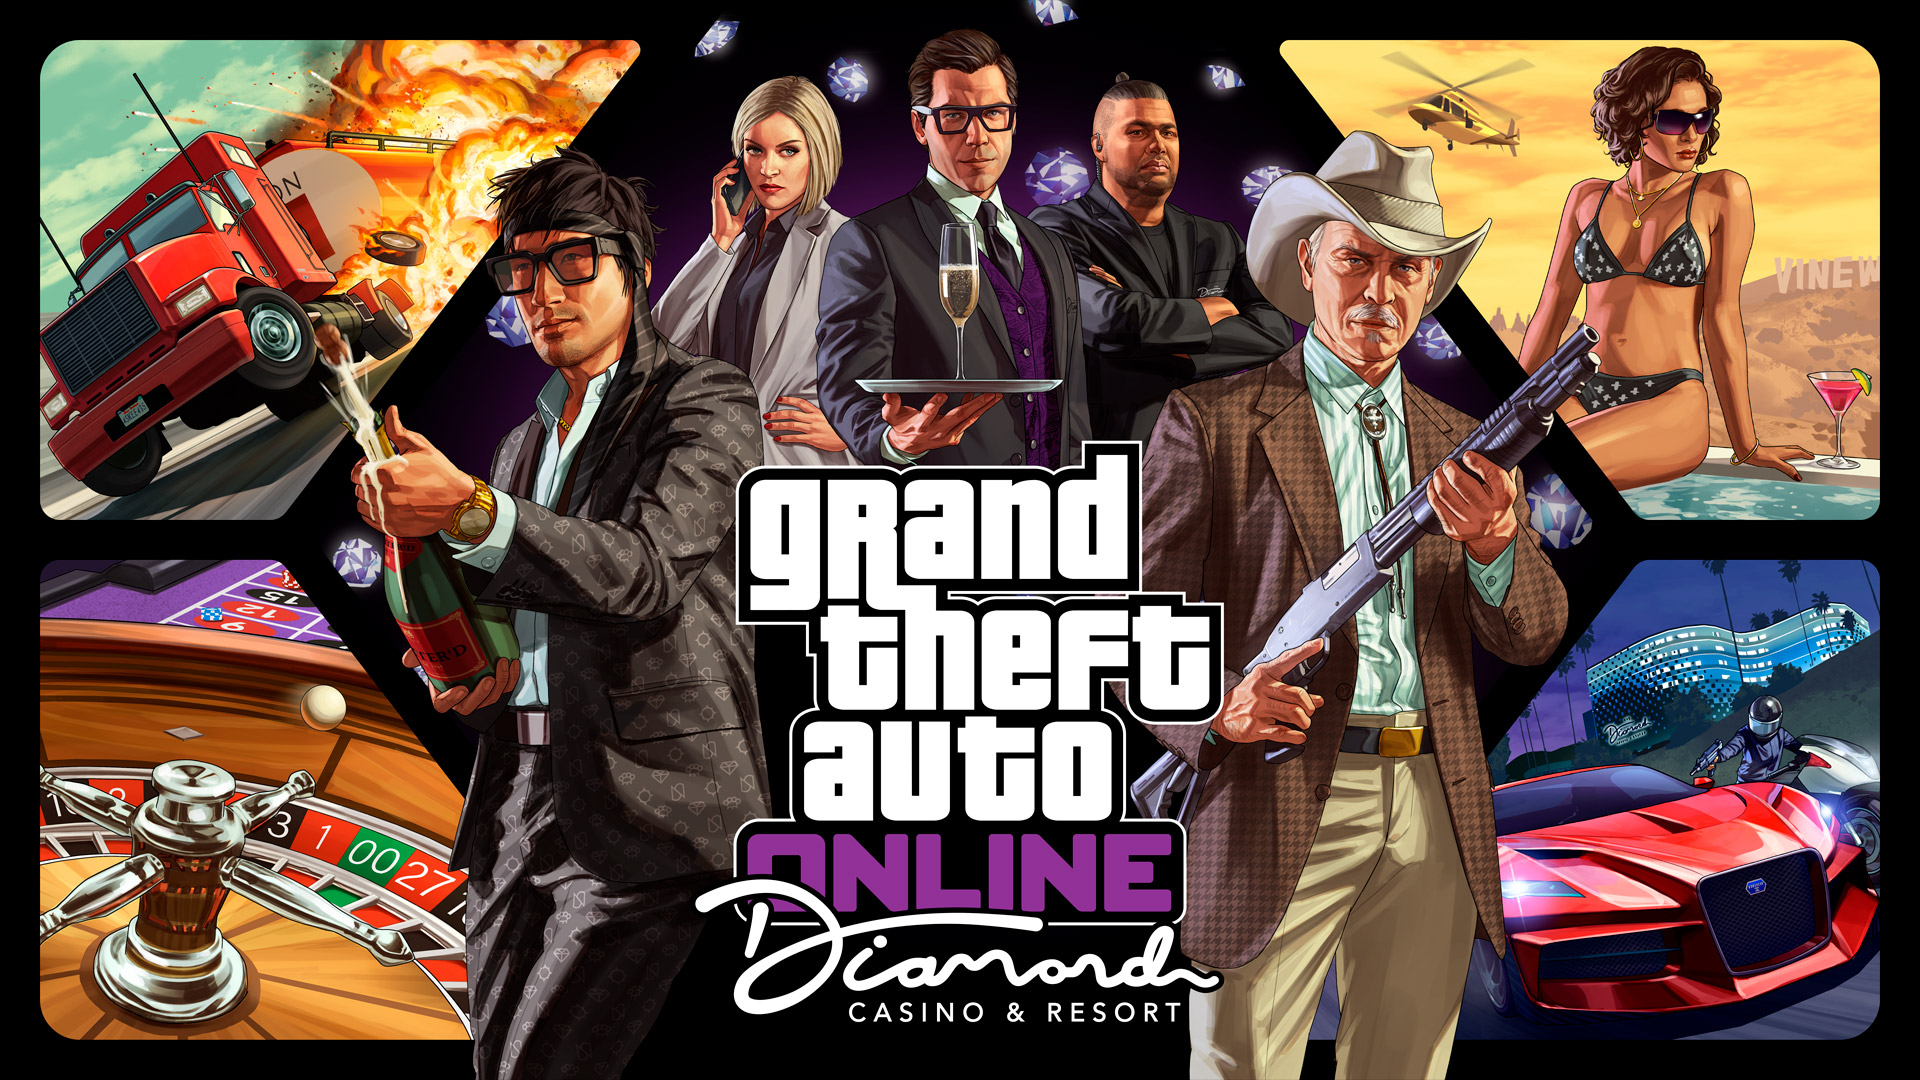 Grand Theft Auto 5 - Game Cướp Đường Phố - Hành động, Nhập Vai Hấp Dẫn Trên PC